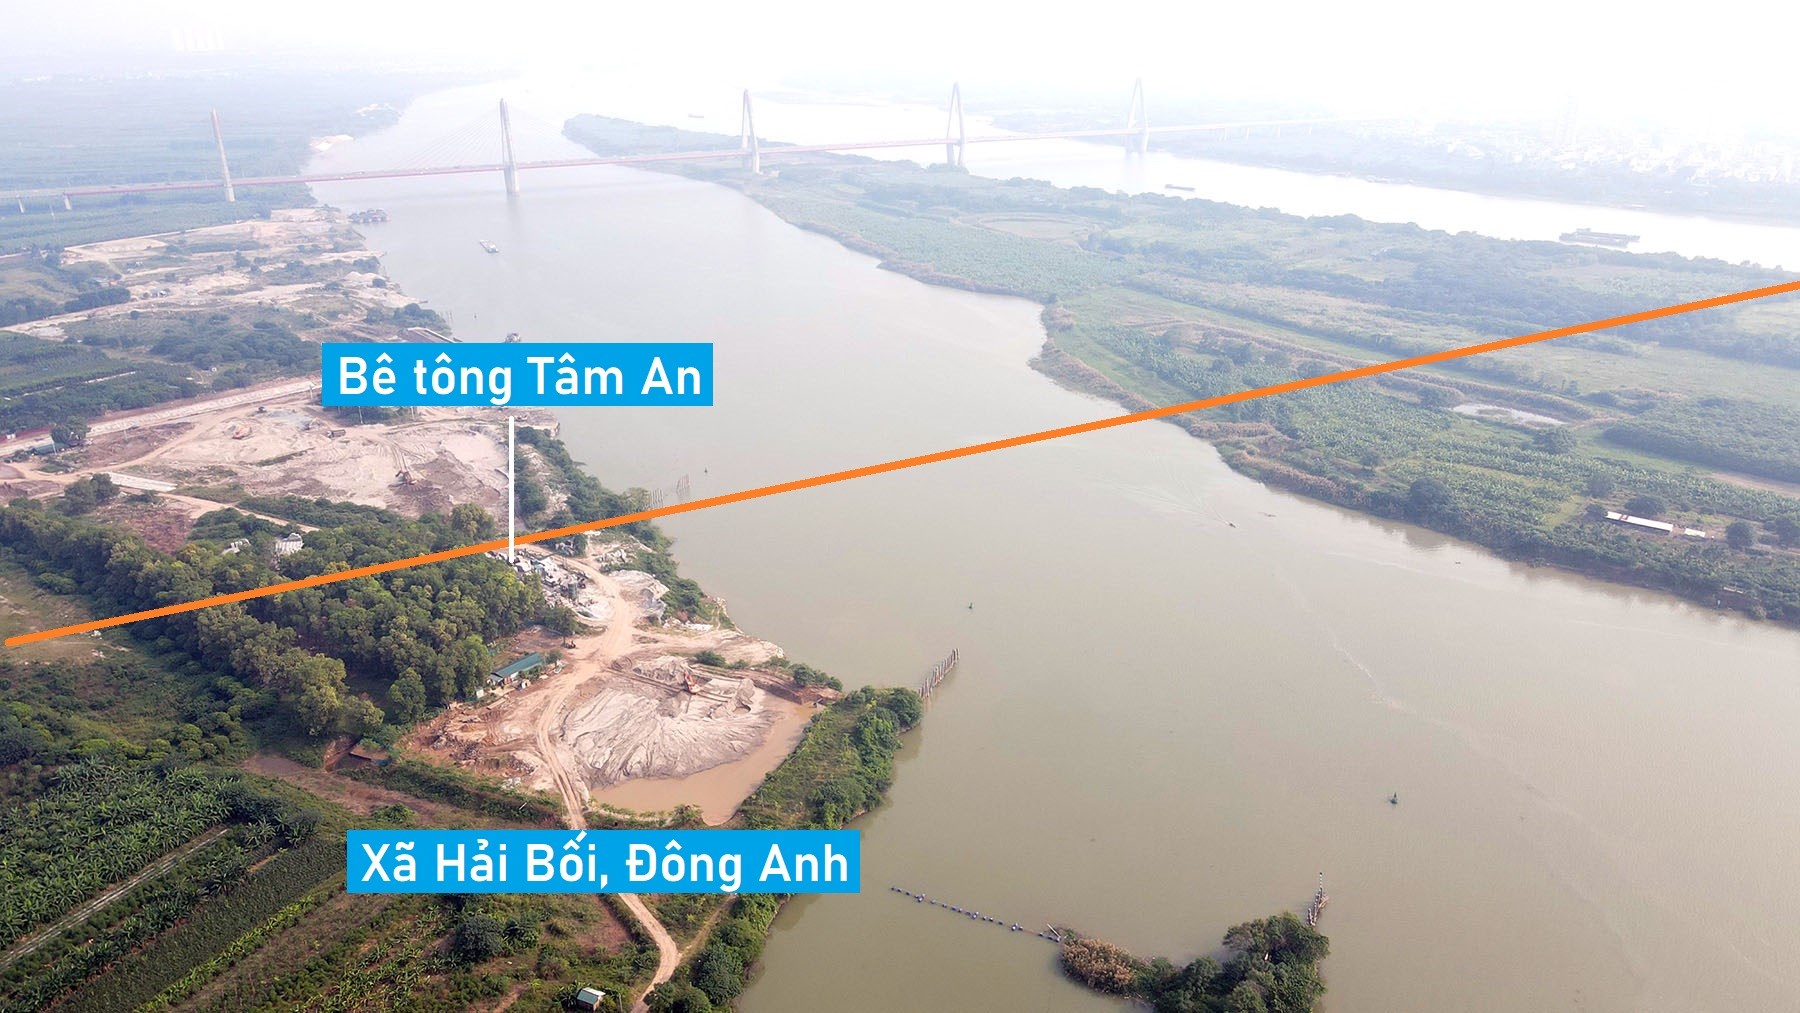 Toàn cảnh vị trí đề xuất xây cầu vượt sông Hồng trên đường Vành đai 2,5 nối Tây Hồ - Đông Anh, Hà Nội